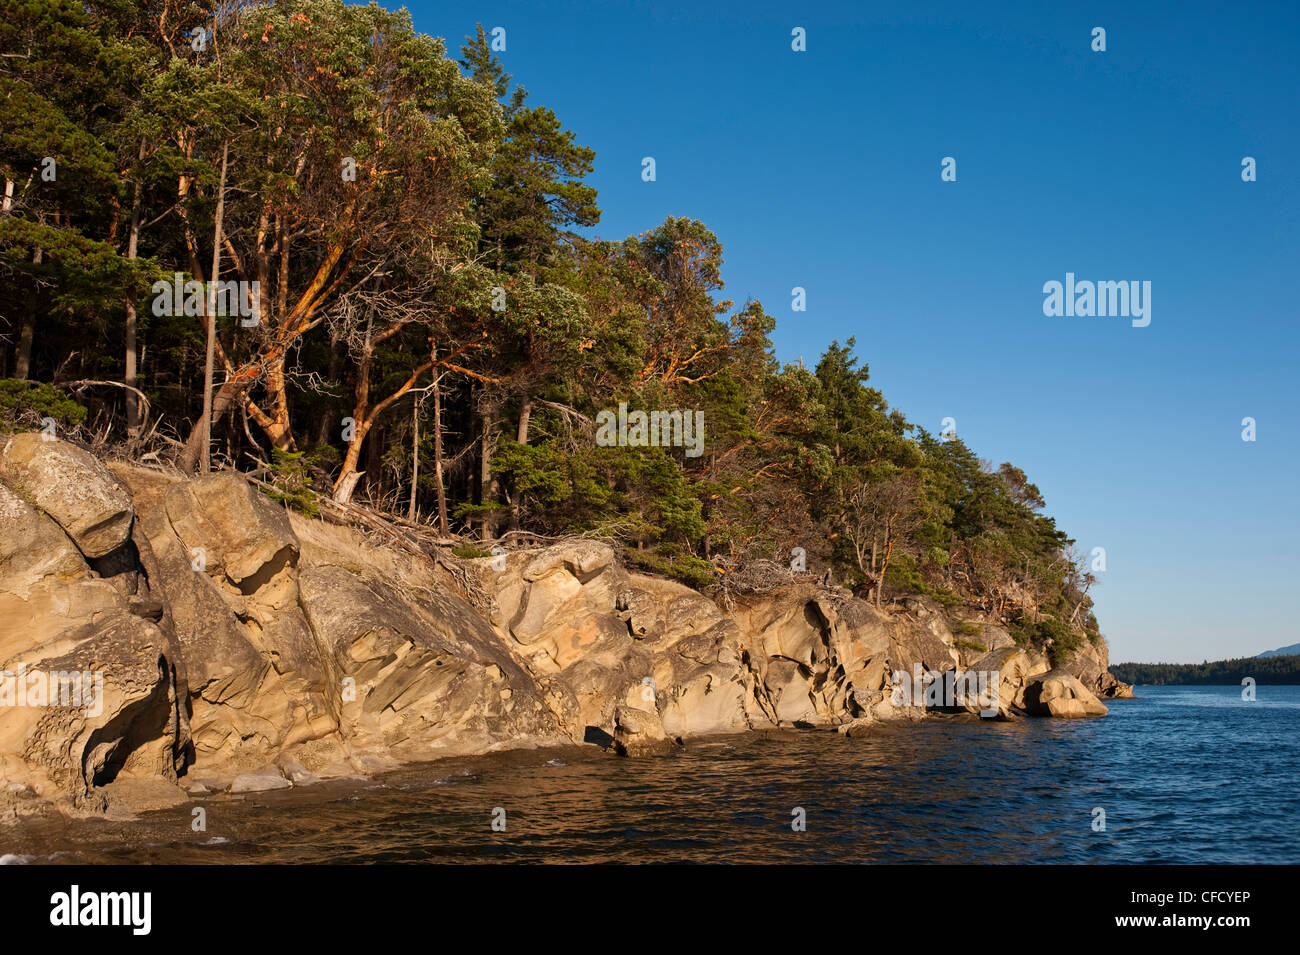 Arenaria scolpite sulle rive di Tumbo Isola, Gulf Islands National Park Riserva, British Columbia, Canada Foto Stock